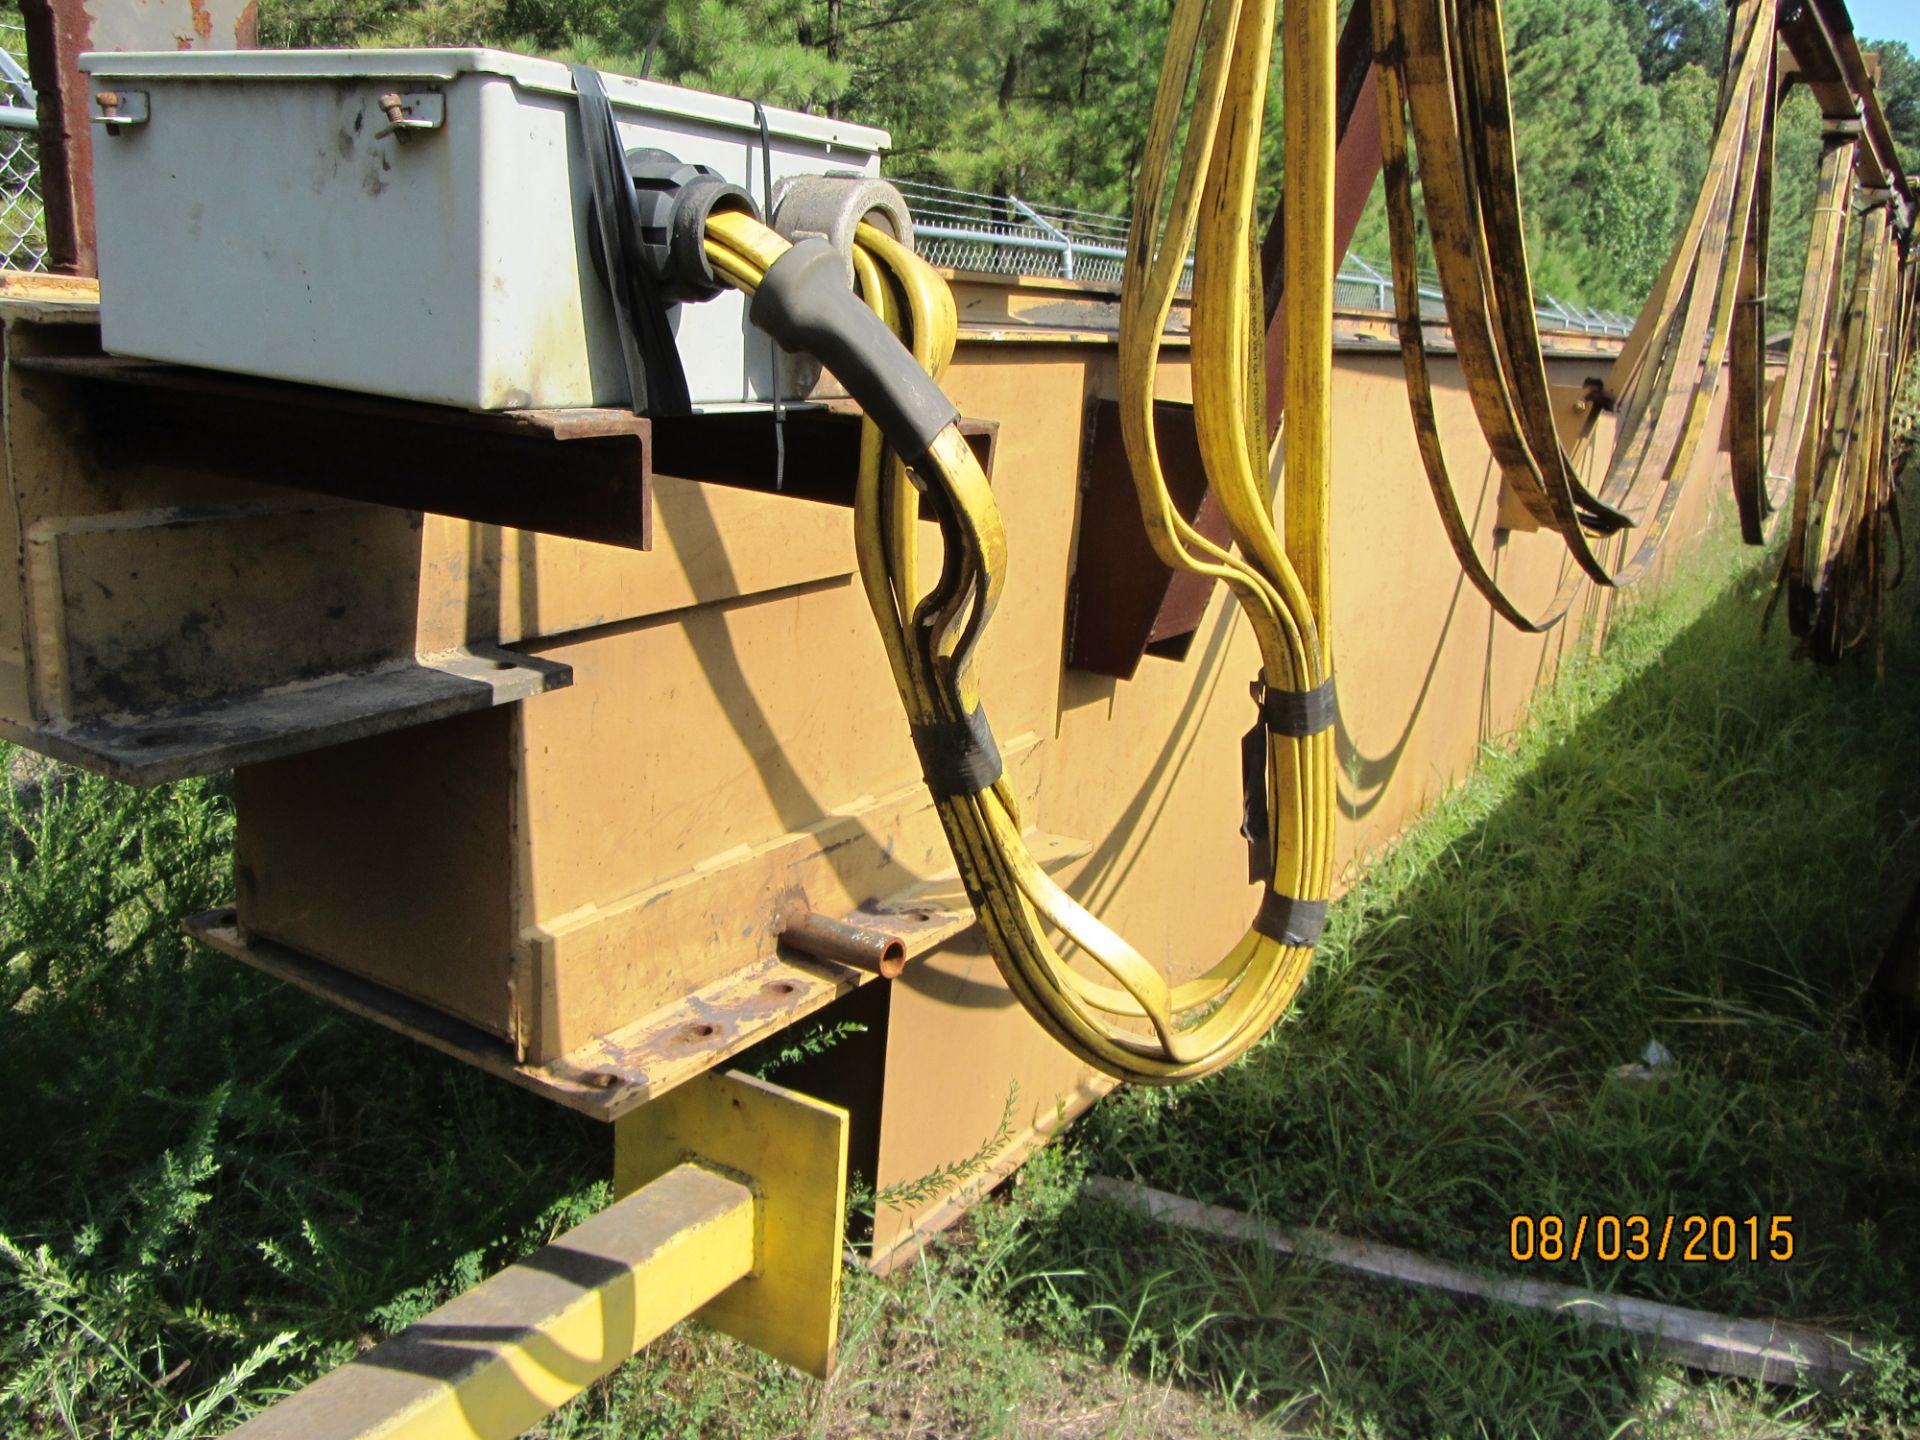 Whiting 10 Ton Bridge Crane 66'6"" Span w/ (2) 5 Ton Hoist - Image 8 of 14